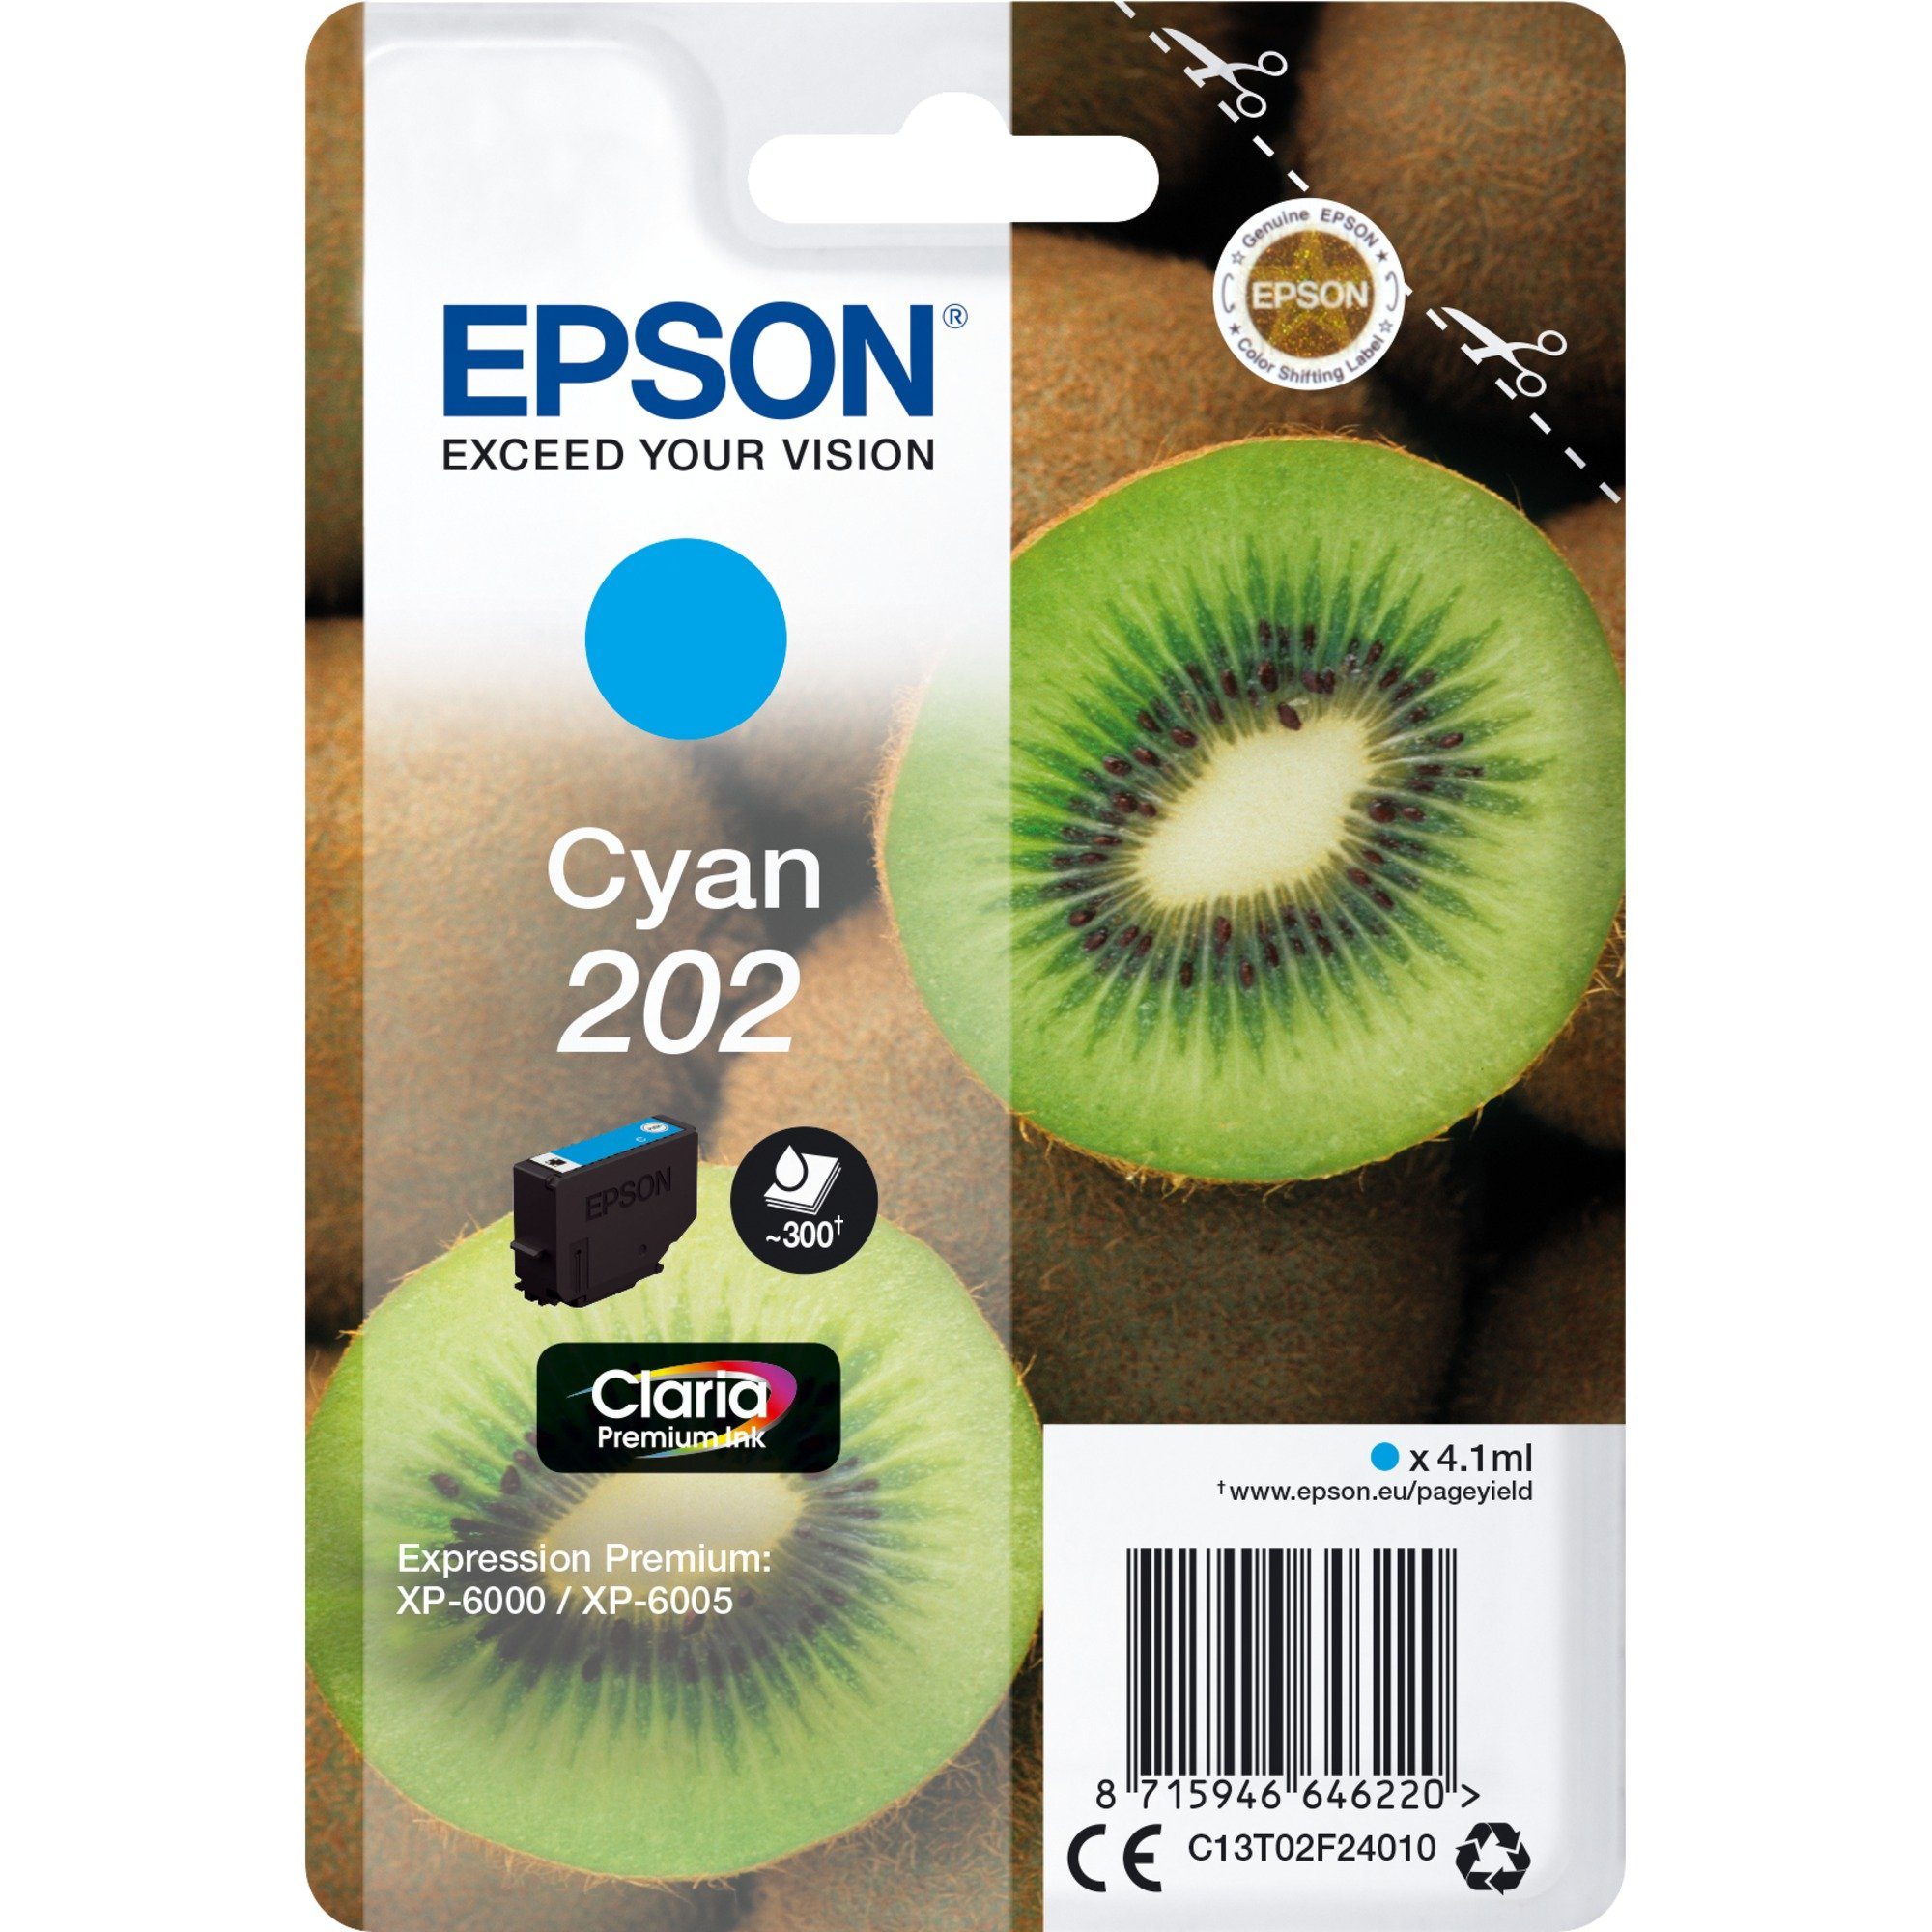 Epson Epson Tinte cyan 202 (C13T02F24010), (Claria Tintenpatrone